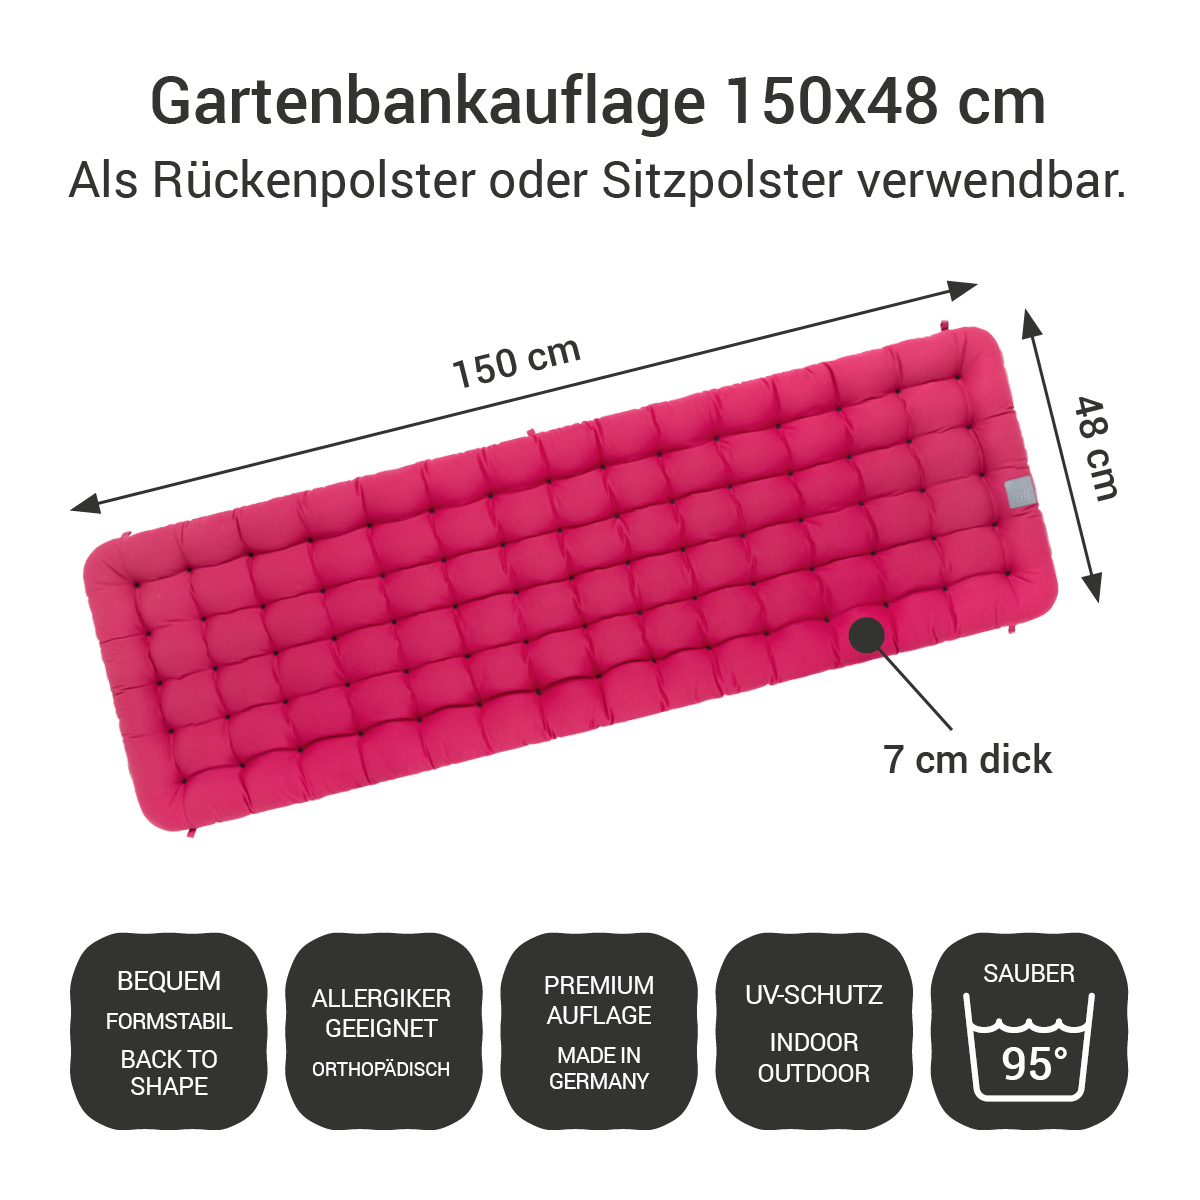 Gartenbankauflage hot pink | 150x48 cm / 150 x 50 cm | bequem & orthopädisch, komplett im Ganzen waschbar bis 95°C, wetterfest, Made in Germany